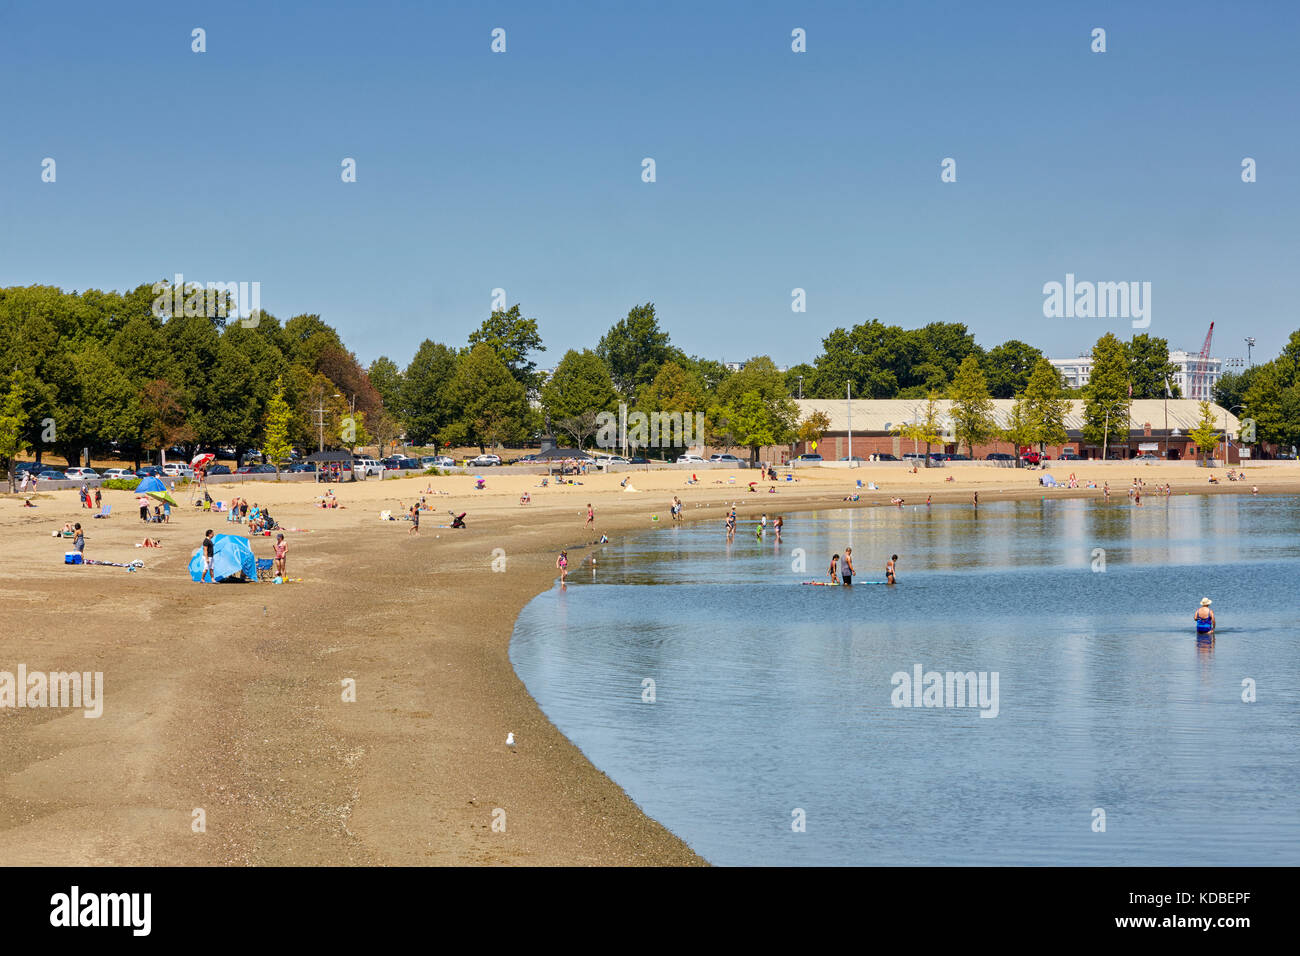 La plage de la baie de Plaisance, Castle Island, South Boston, Massachusetts, USA Banque D'Images